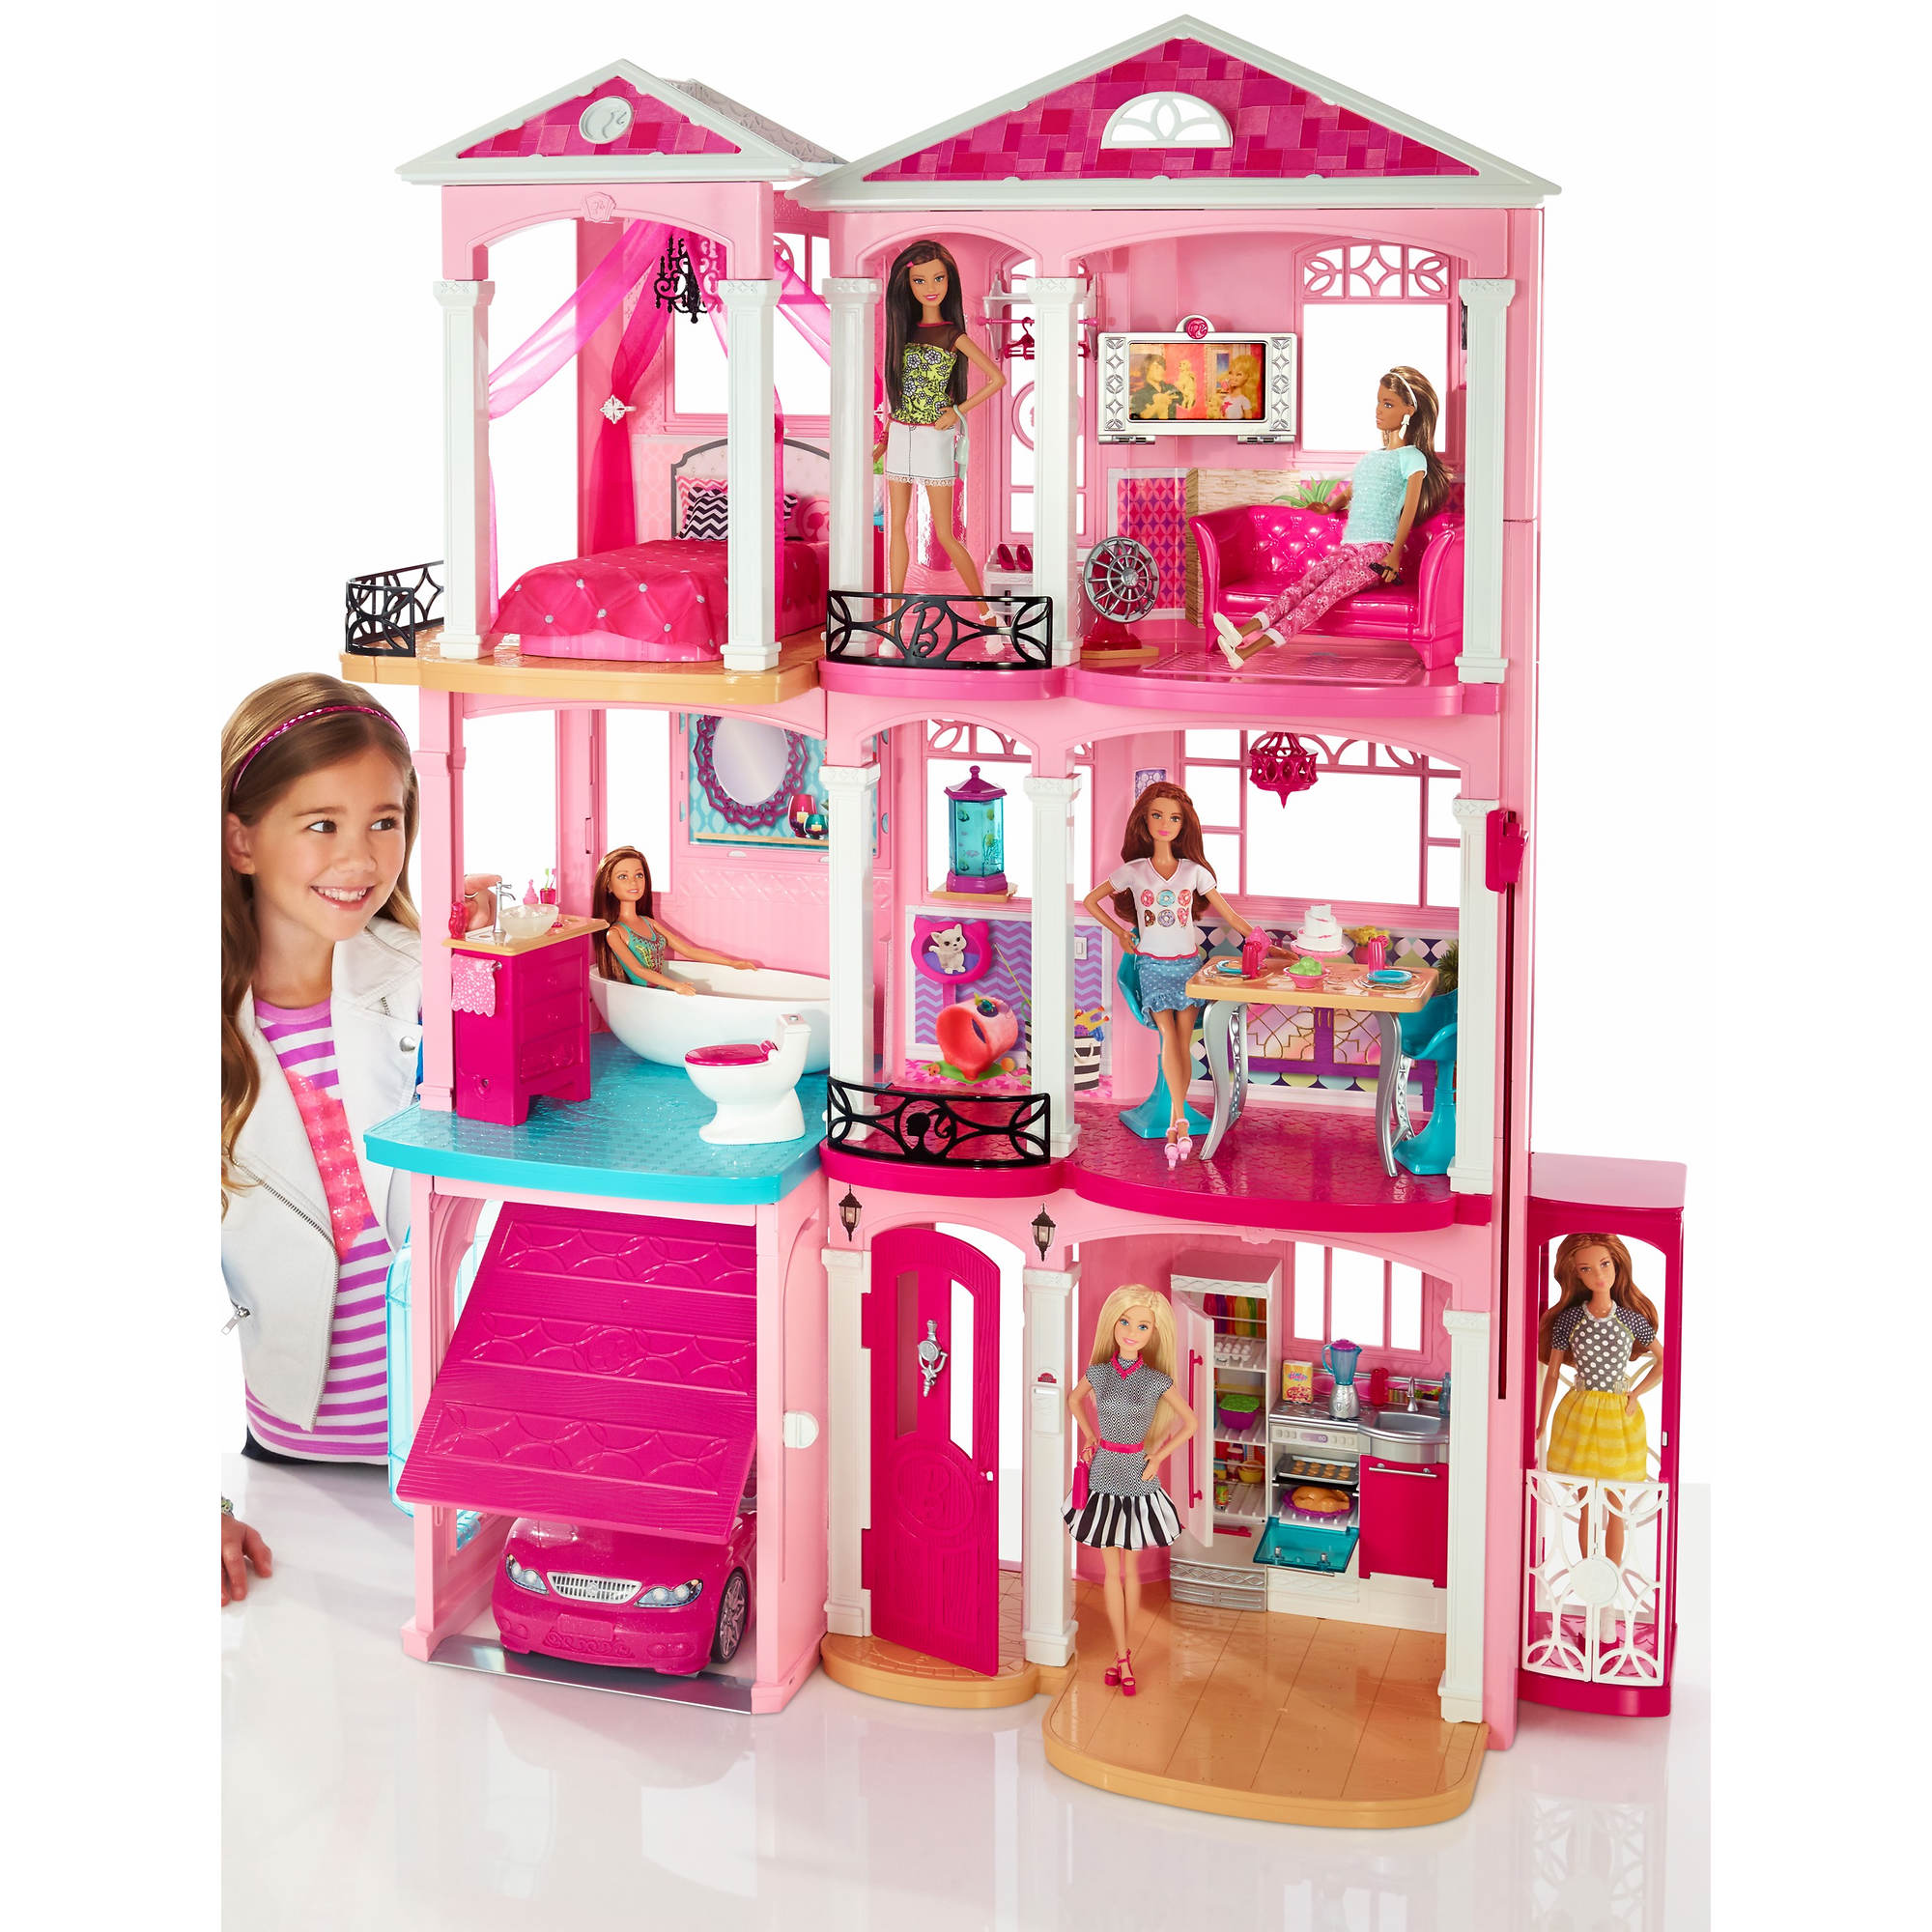 Кукольные игрушки купить. Набор Barbie дом мечты ffy84. Барби Dreamhouse кукла. Barbie новый дом мечты cjr47. Домик Барби Малибу.